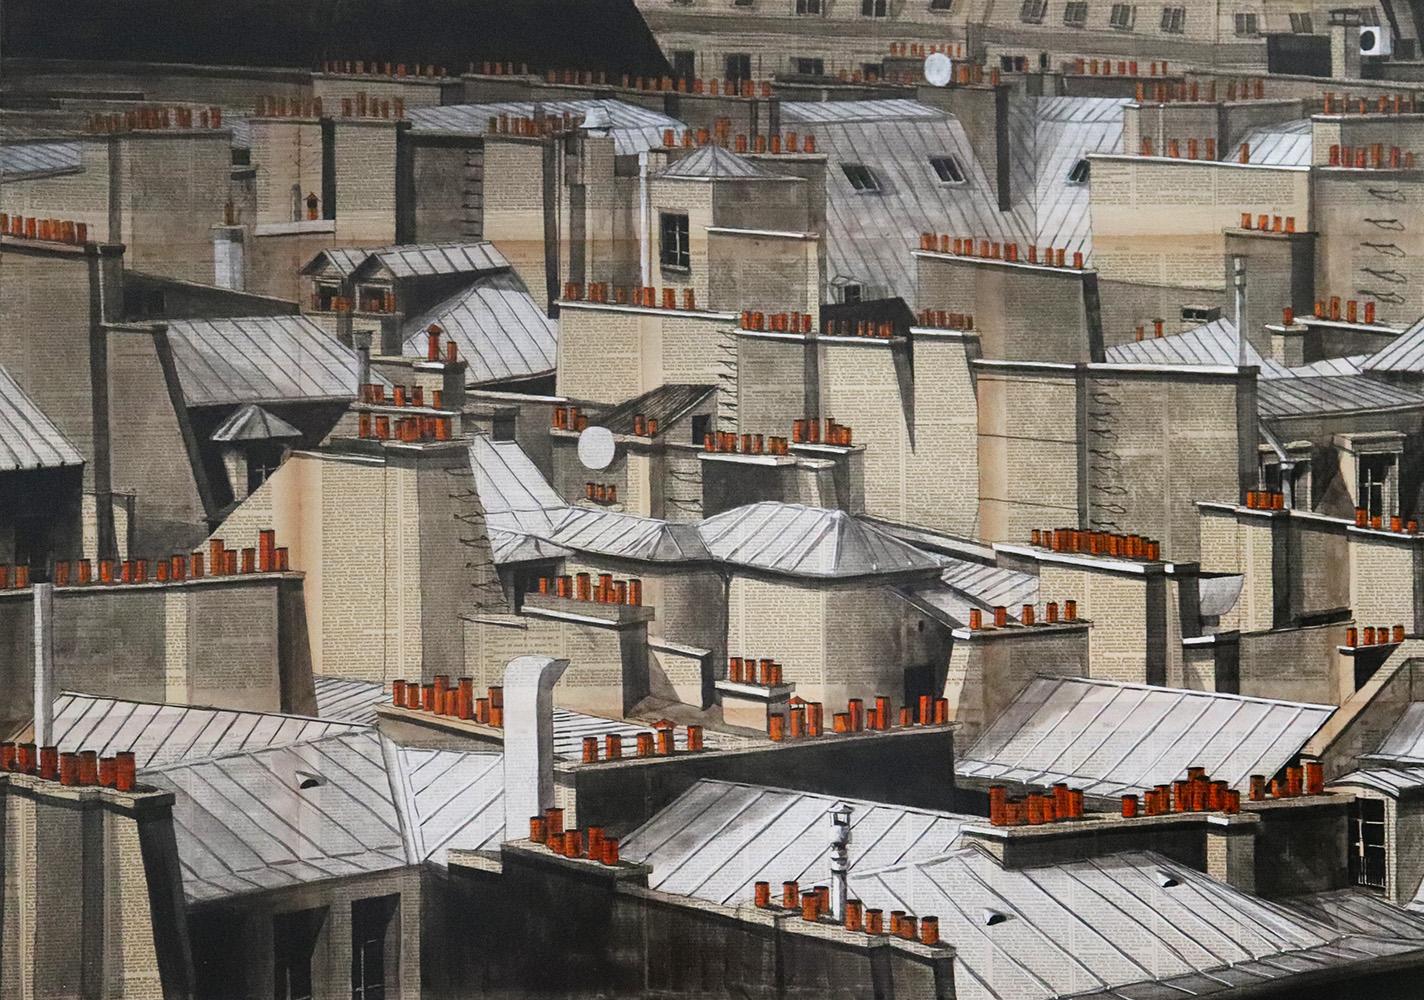 Landscape Painting Guillaume Chansarel (Guiyome) - Rooftops II de Guillaume Chansarel - Peinture de paysage urbain, Paris, ville